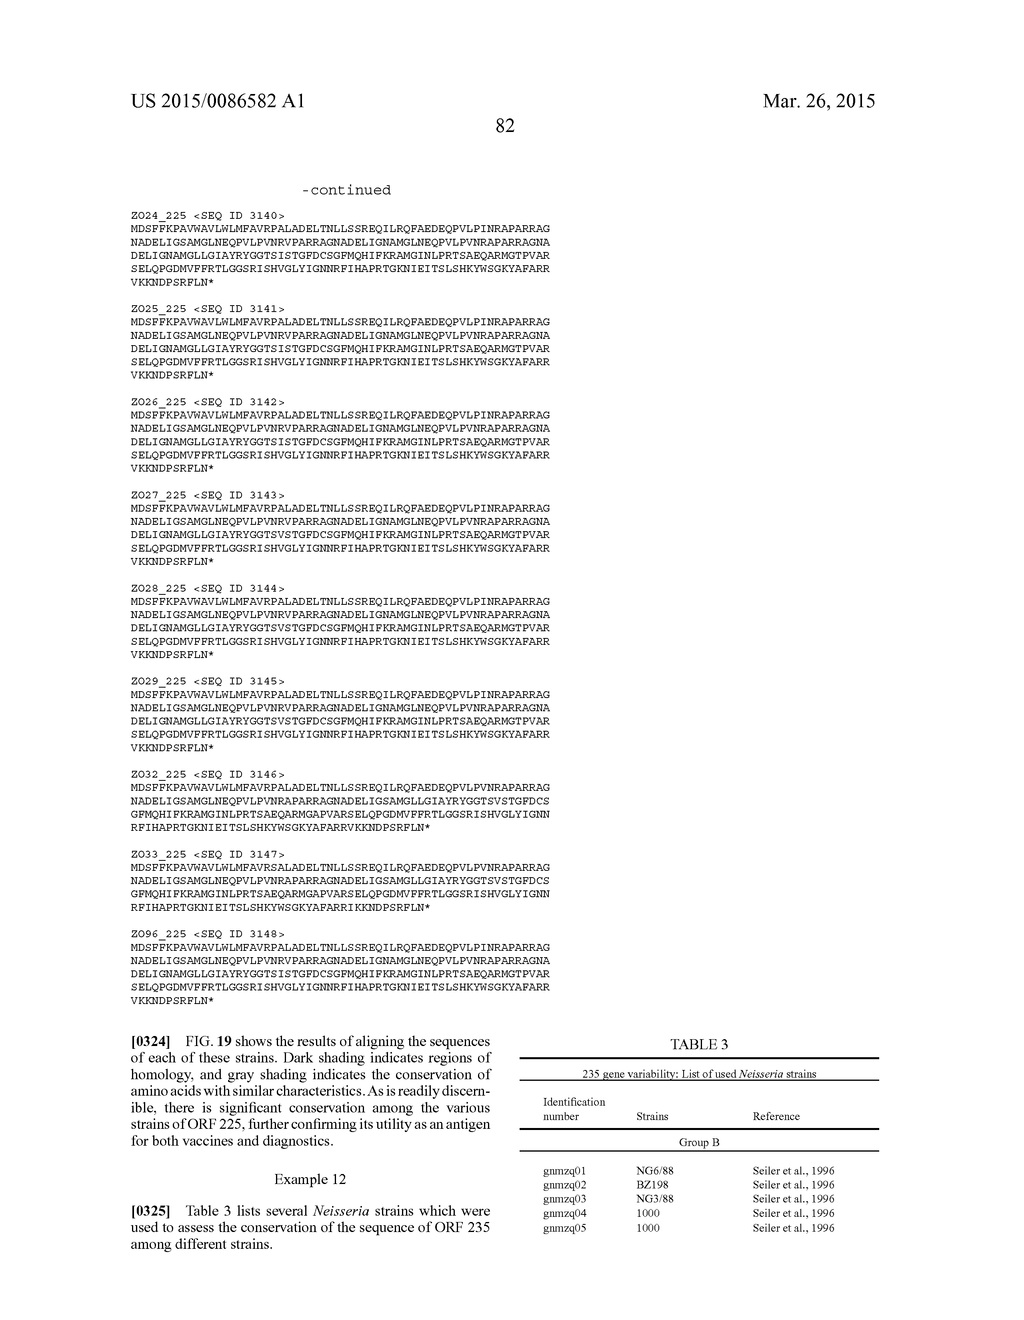 NEISSERIA MENINGITIDIS ANTIGENS AND COMPOSITIONS - diagram, schematic, and image 114